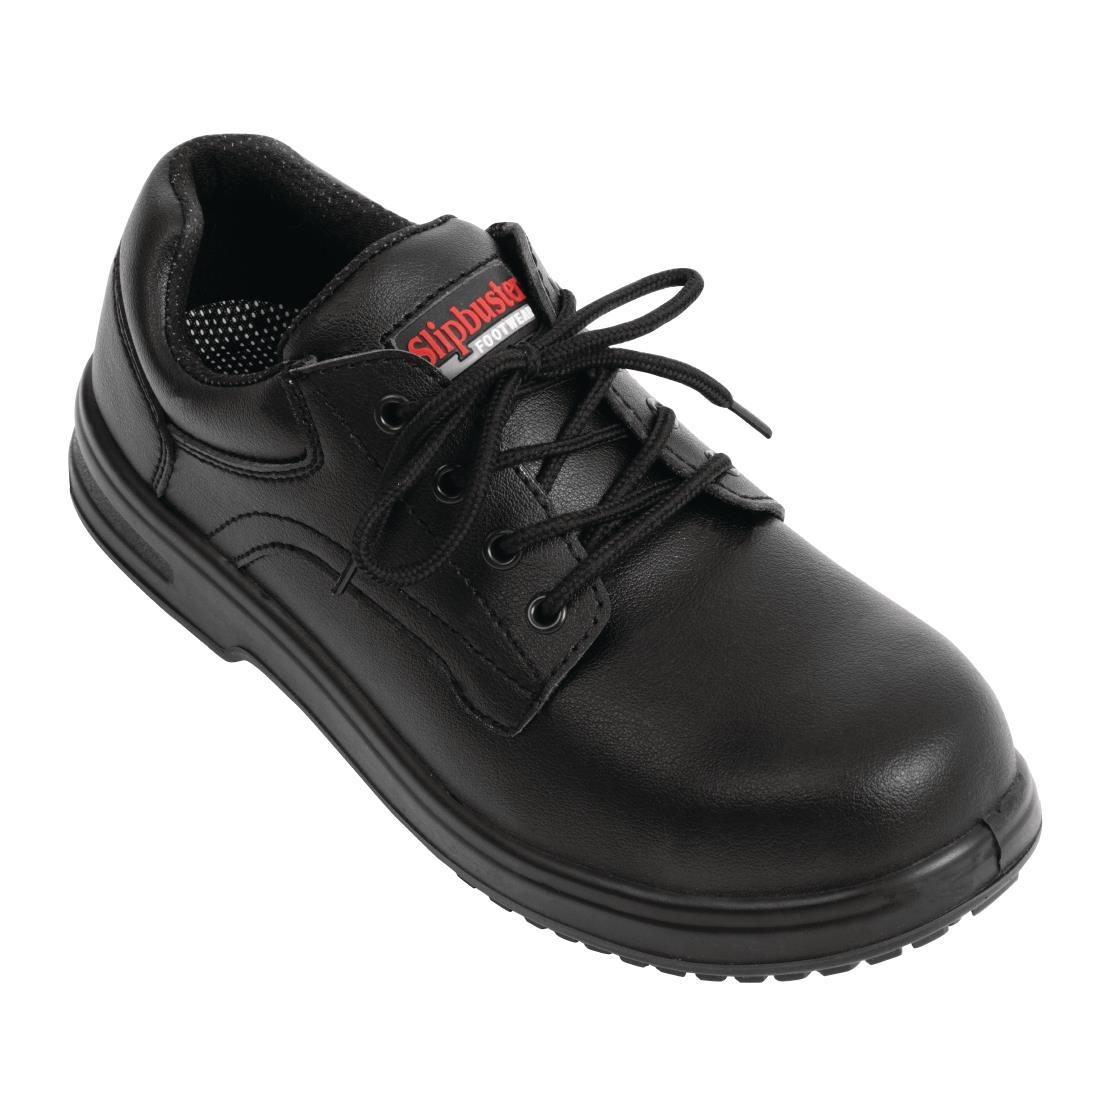 Slipbuster Basic Shoes Slip Resistant Black 43 - BB498-43  - 1